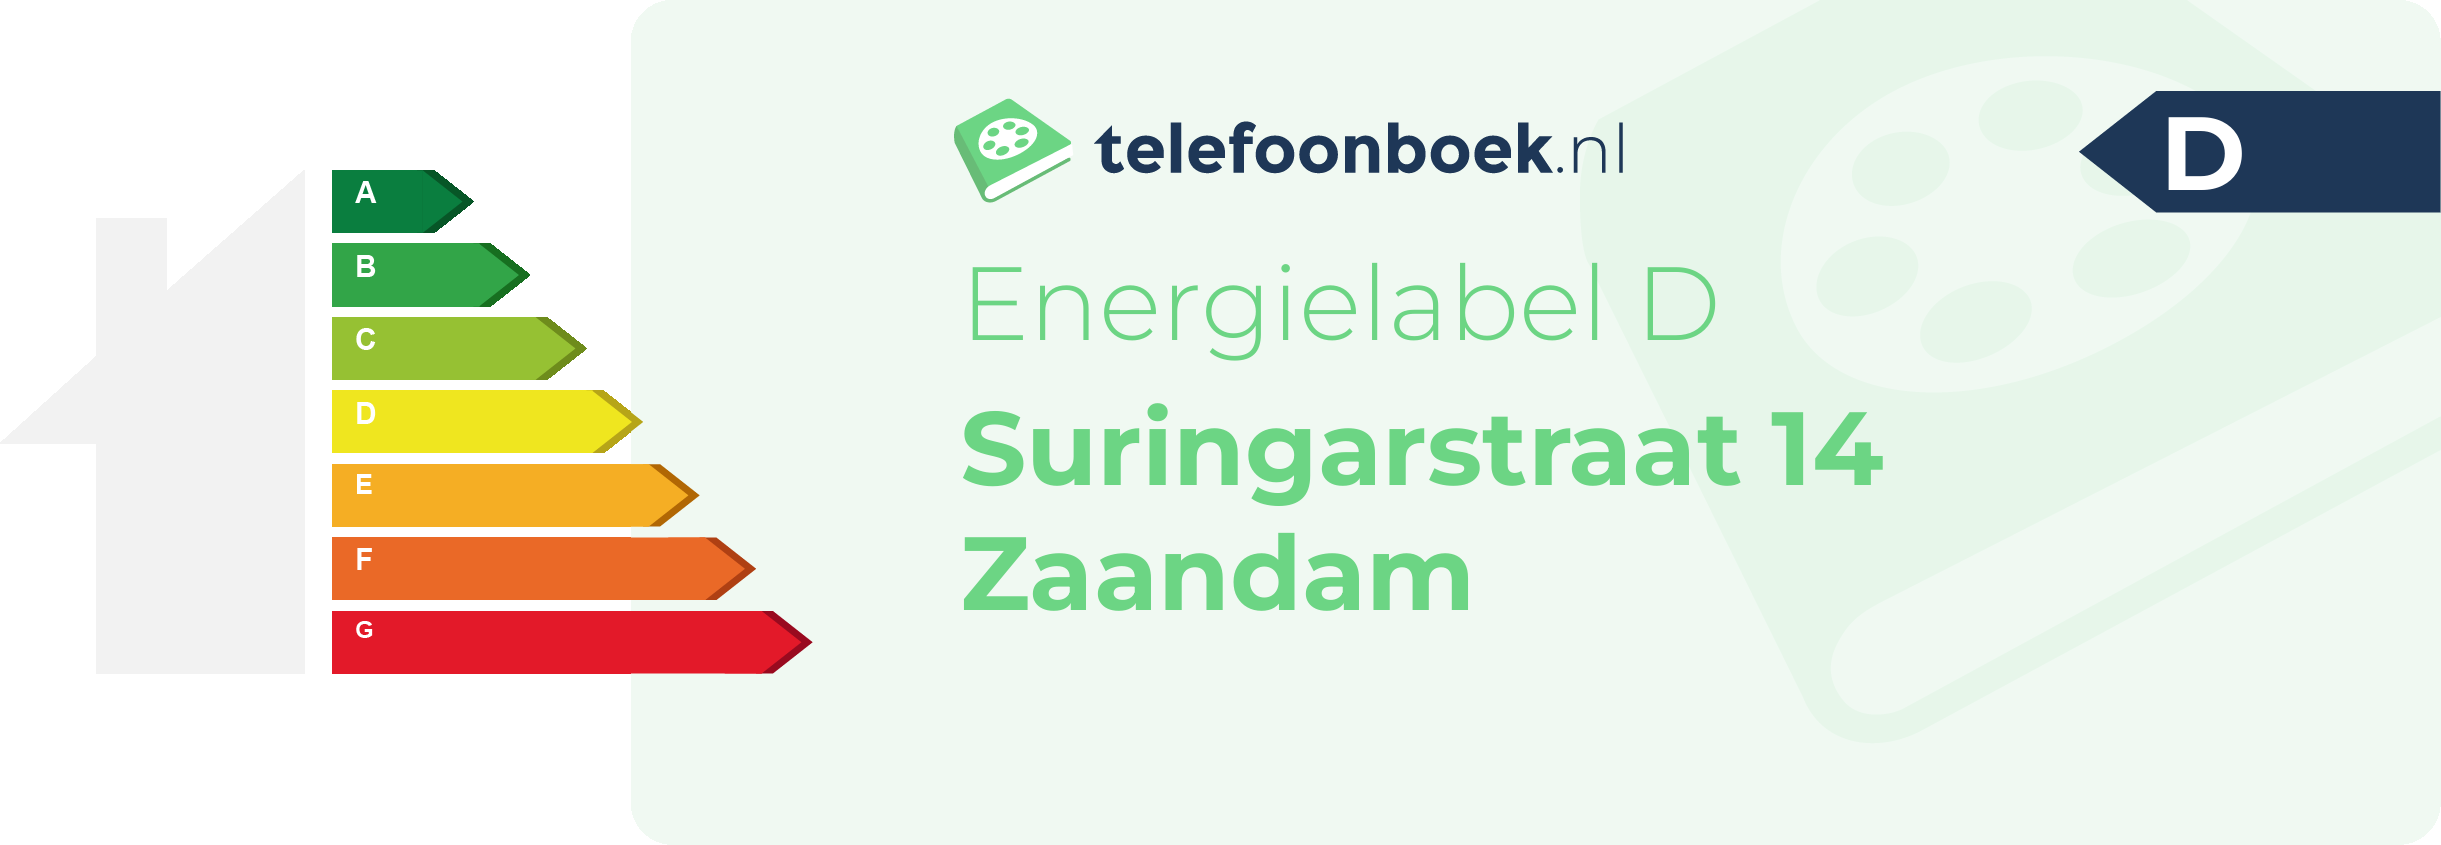 Energielabel Suringarstraat 14 Zaandam